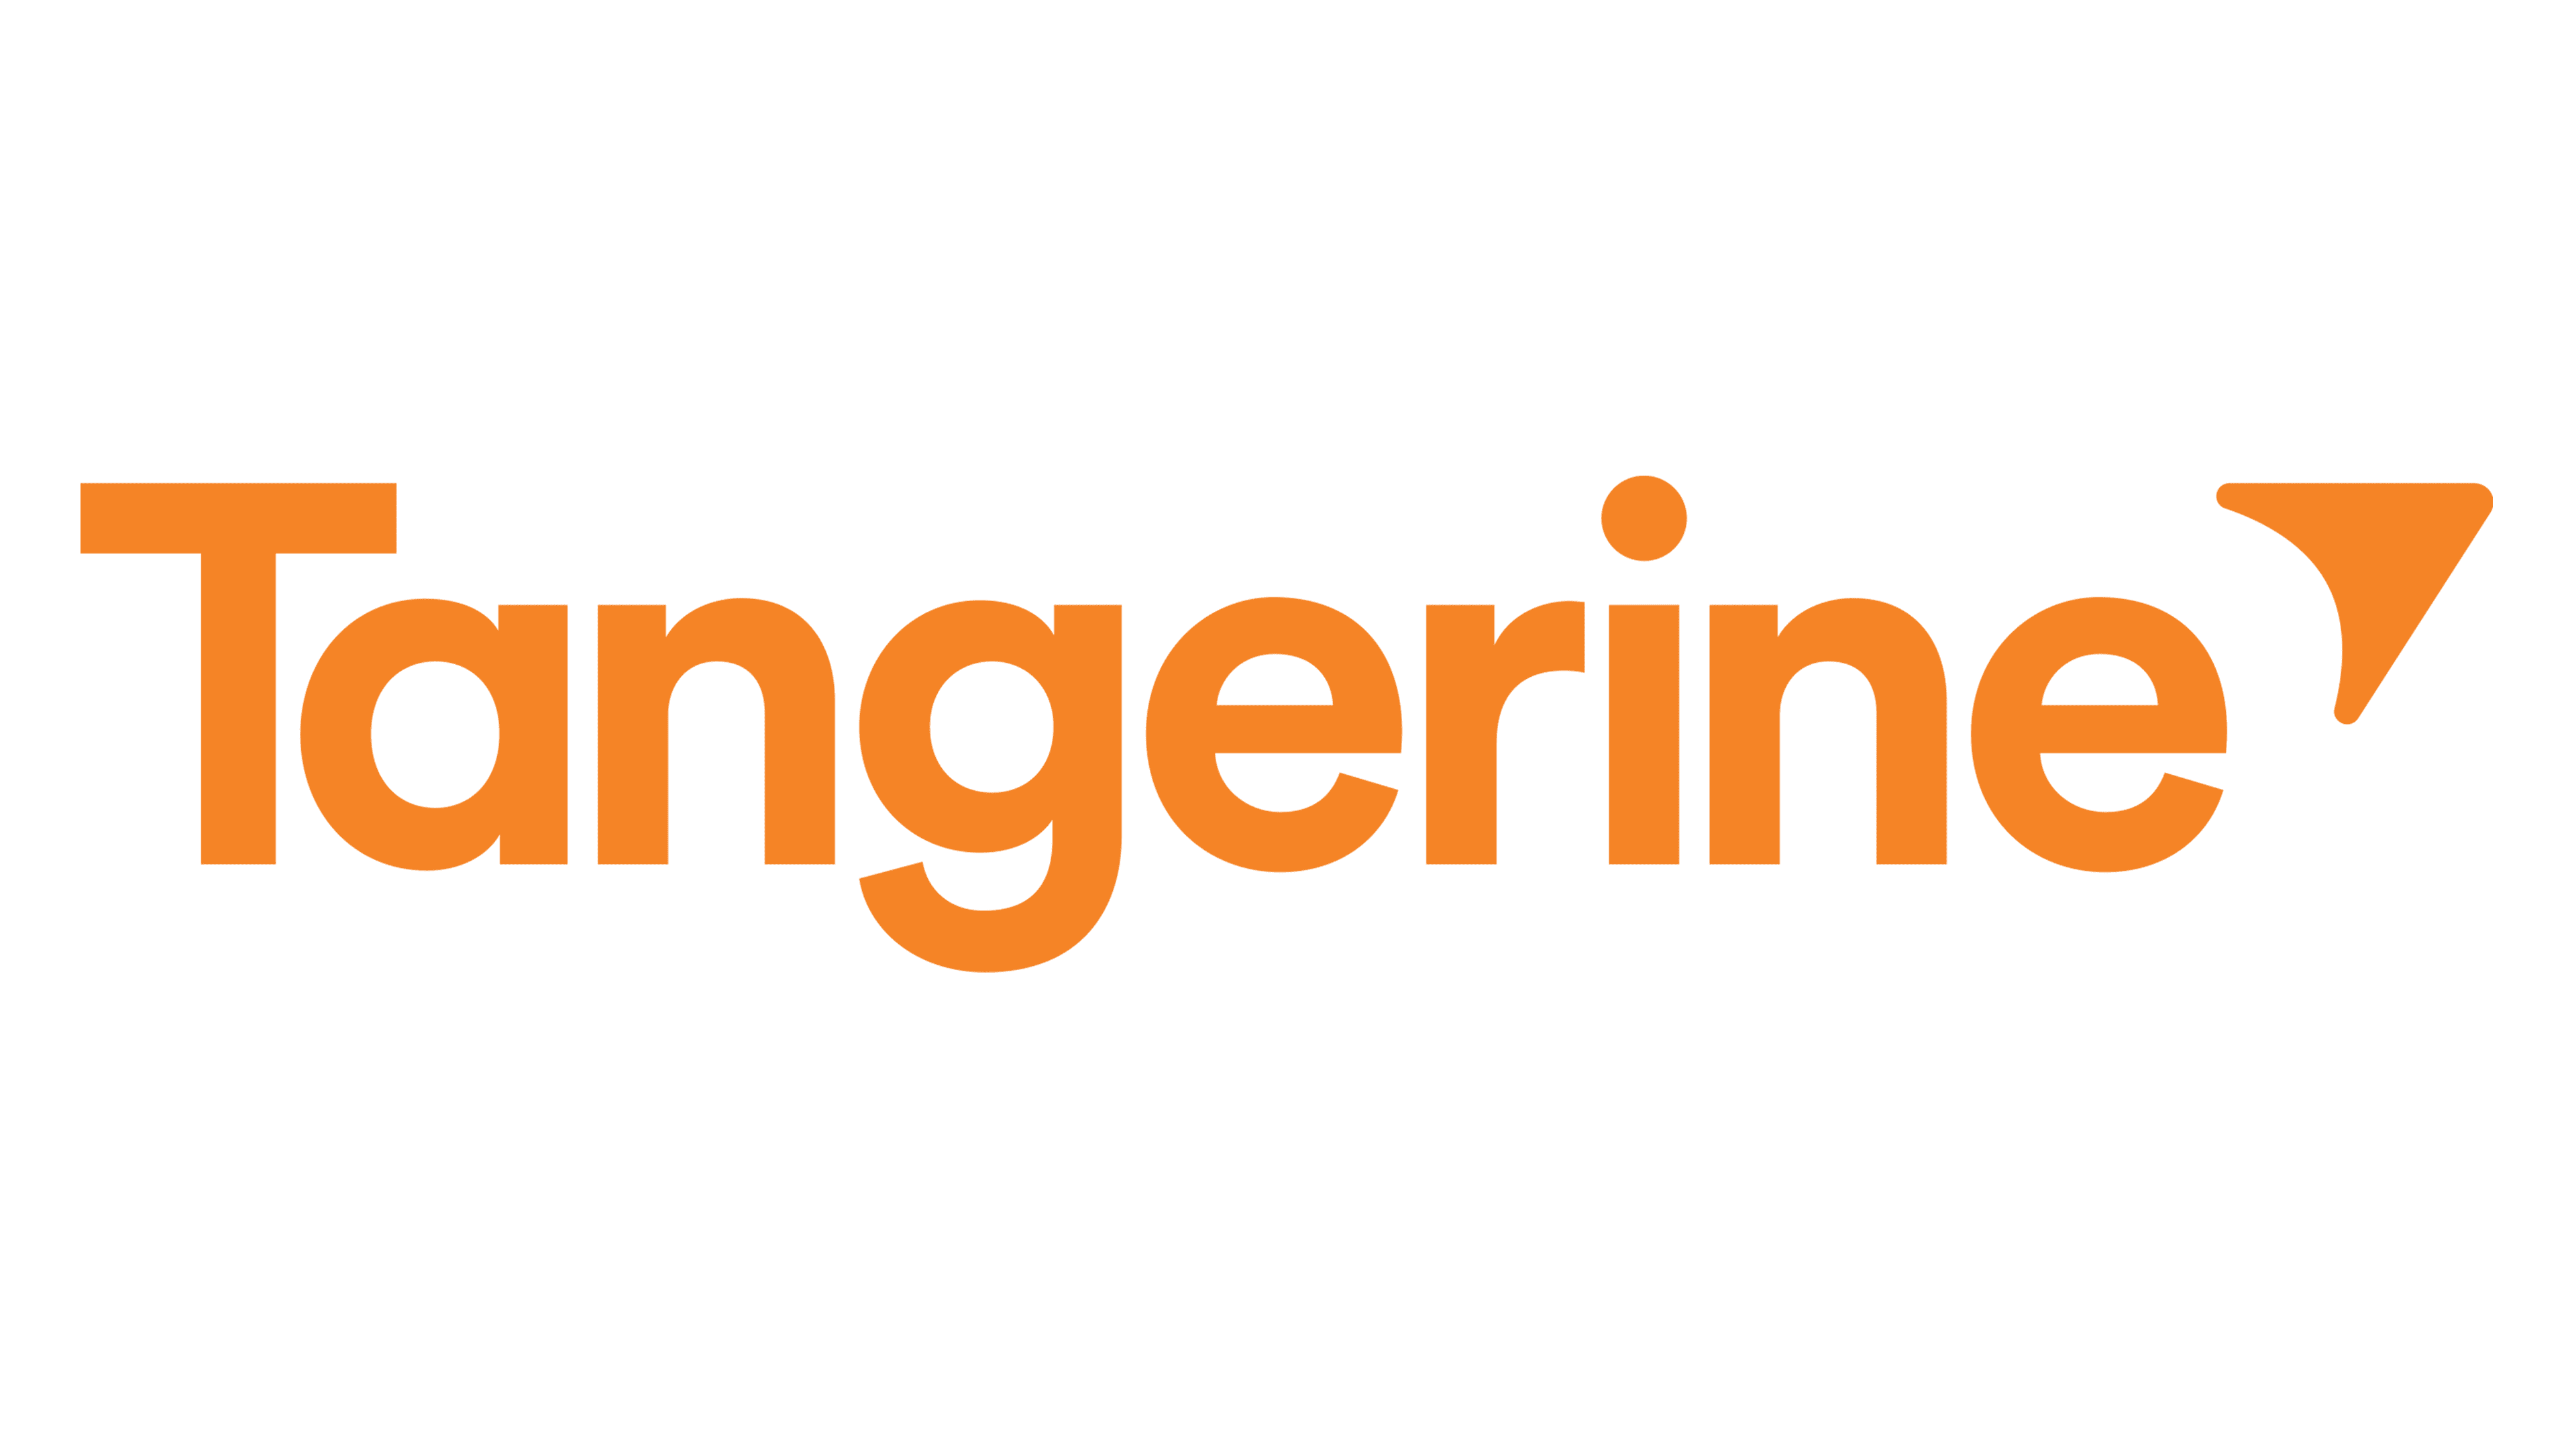 Мандарин банк. Tangerine Bank. Tangerine logo. Оранжевый логотип банка. Банк с оранжевой эмблемой.